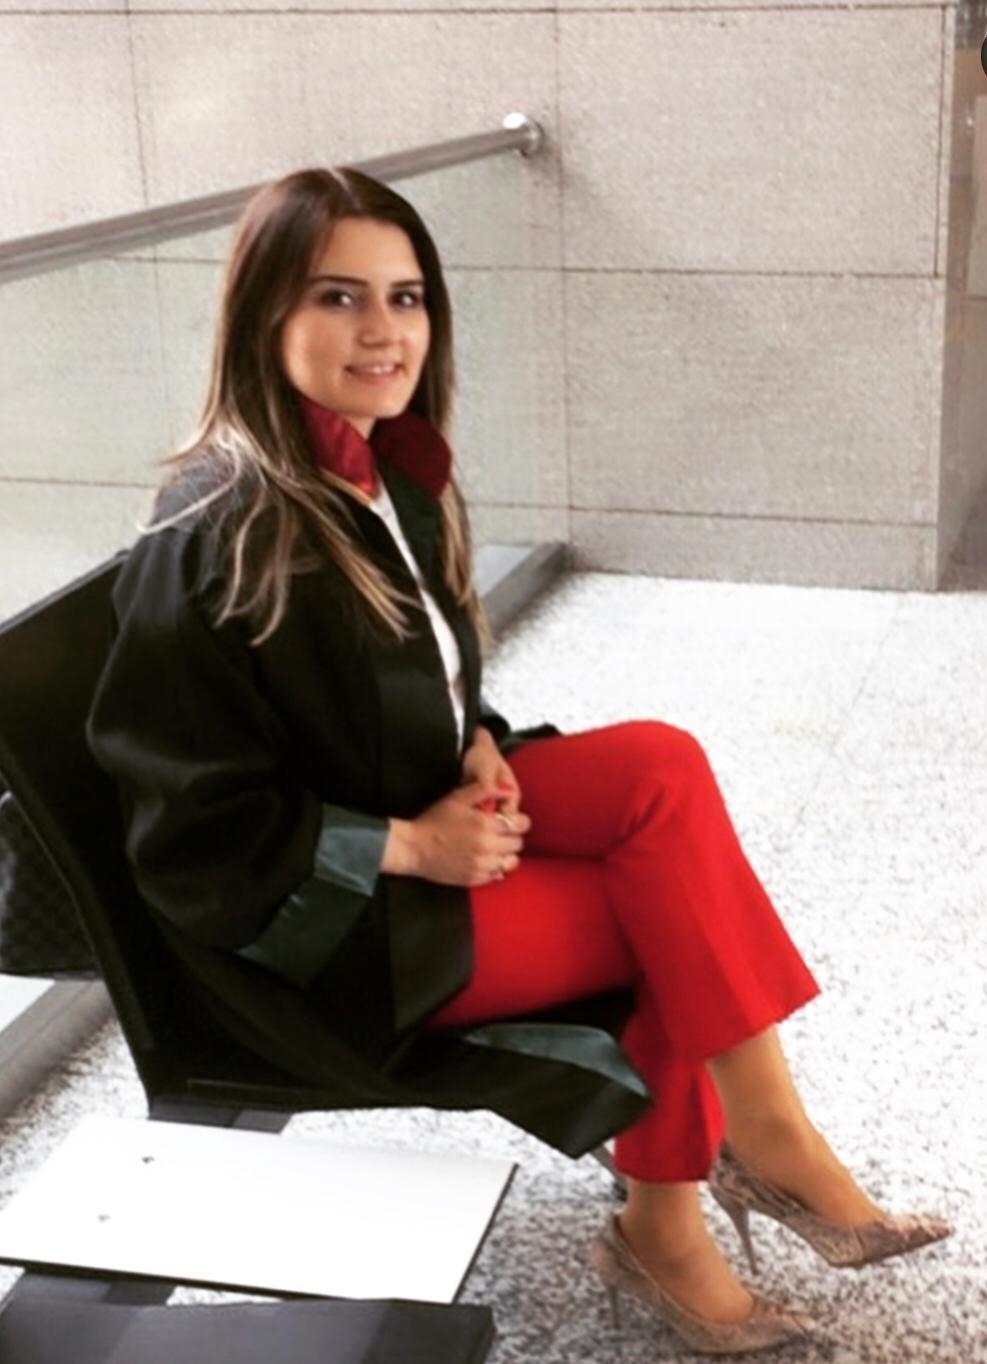 Tuzlada öldürülen kadın avukat tehditleri sosyal medyasından paylaşmış